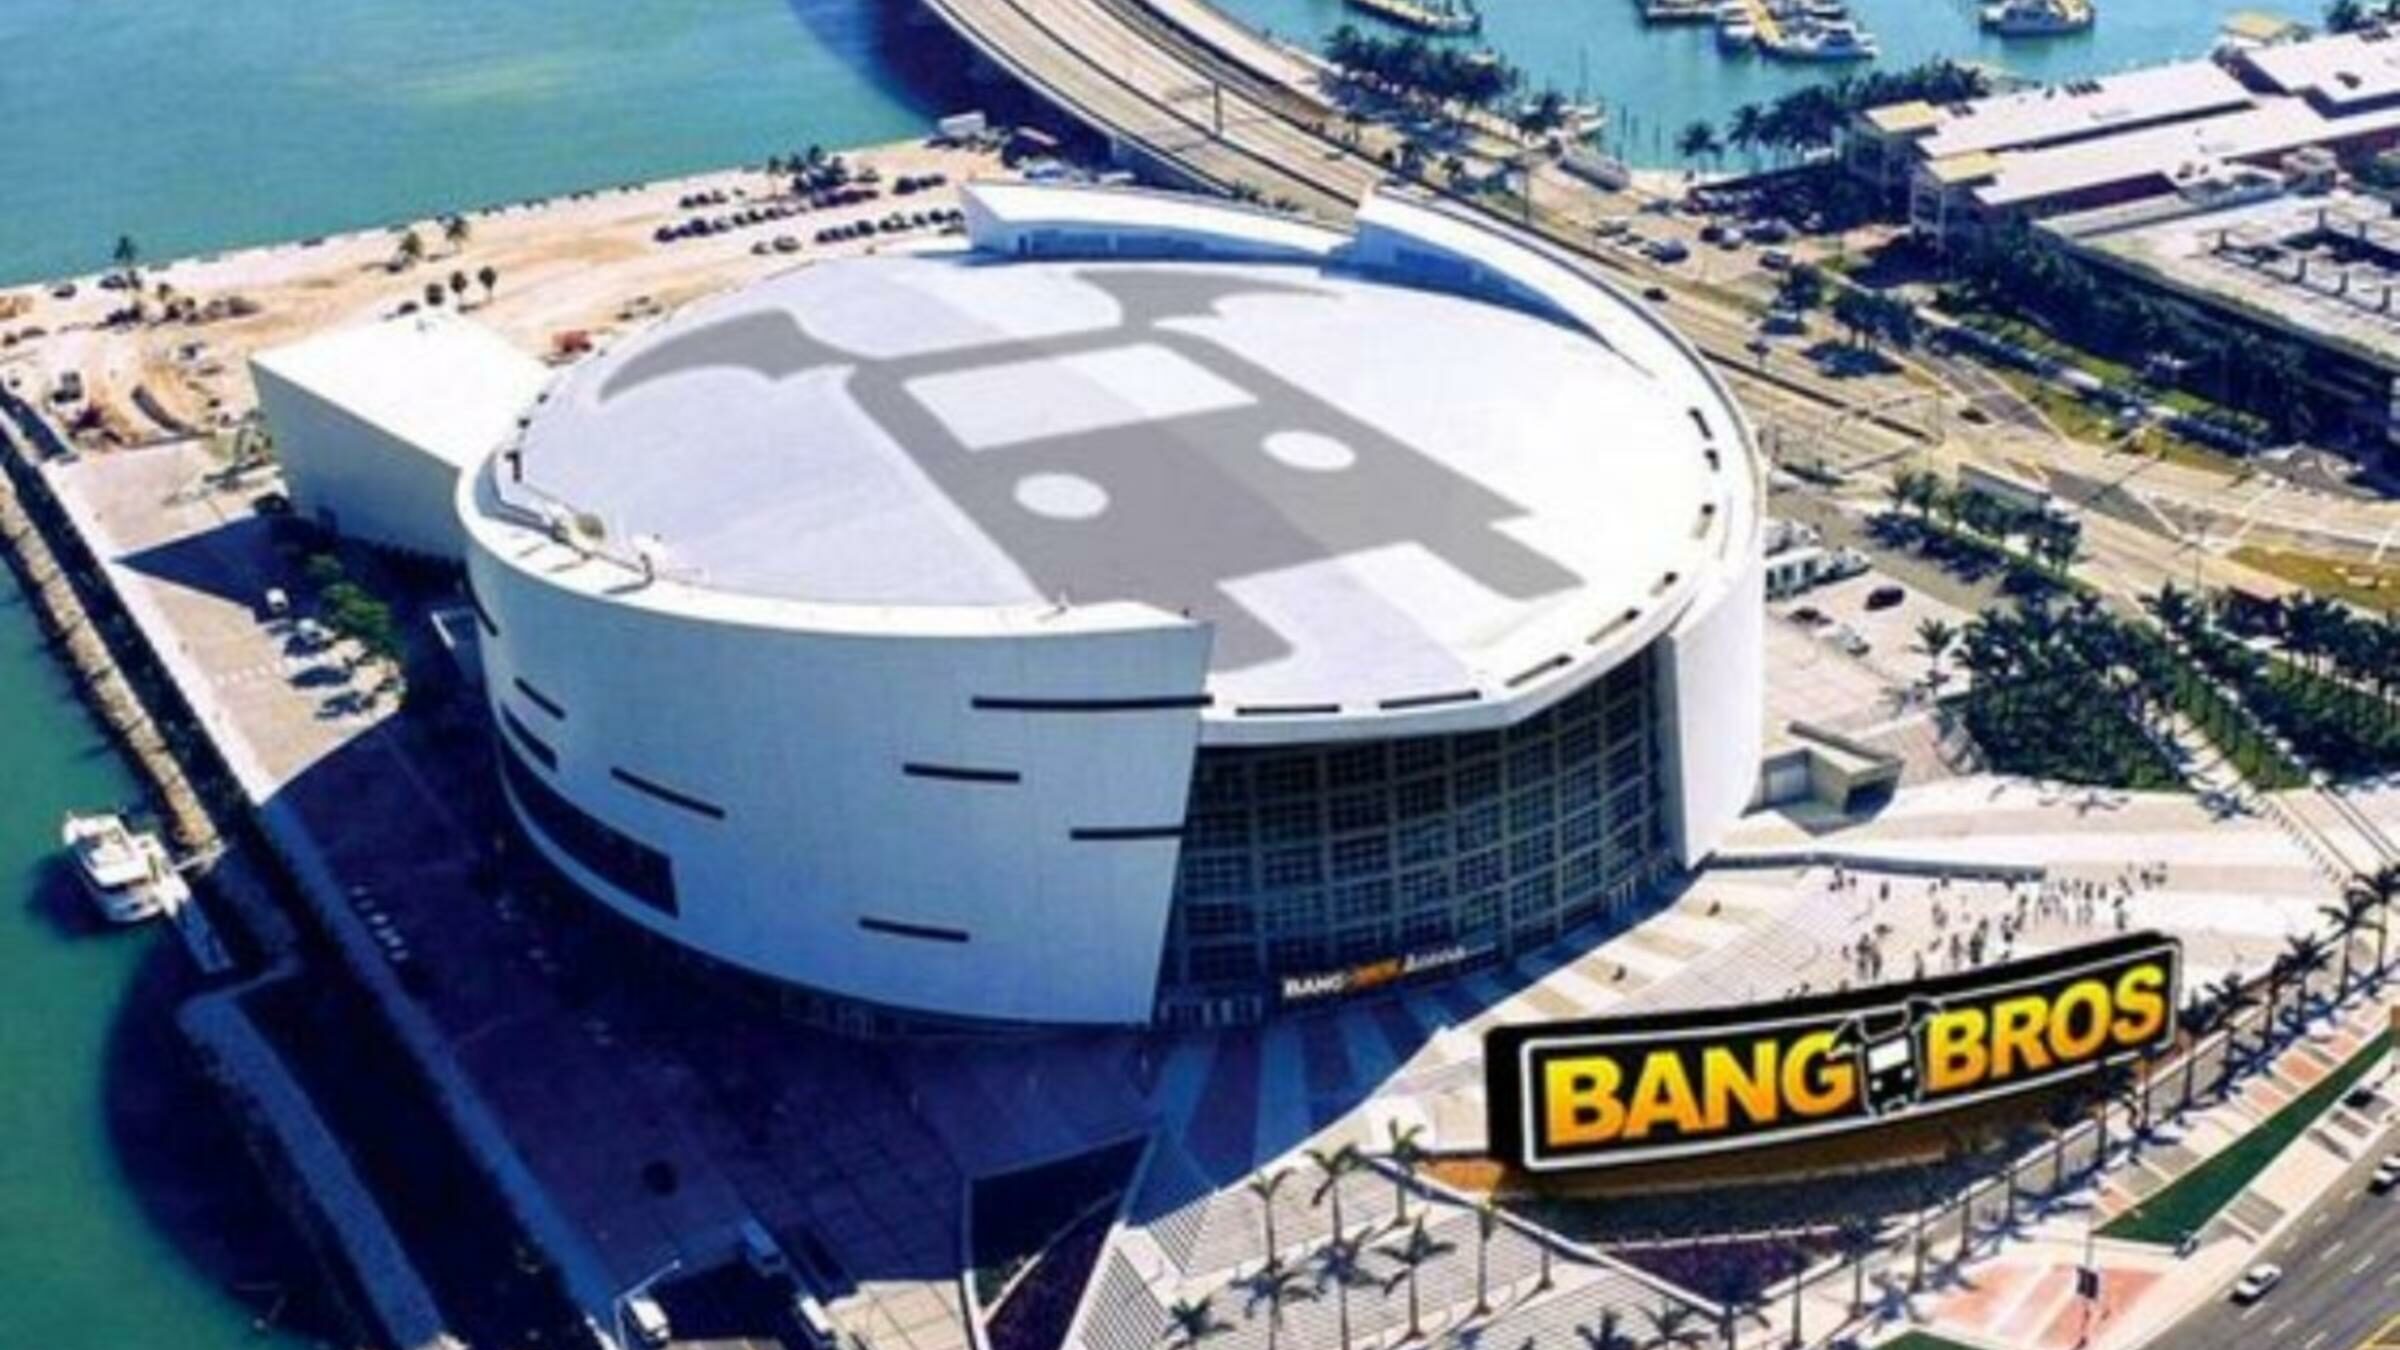 Bang Bros vuole dare il suo nome all'arena dei Miami Heat